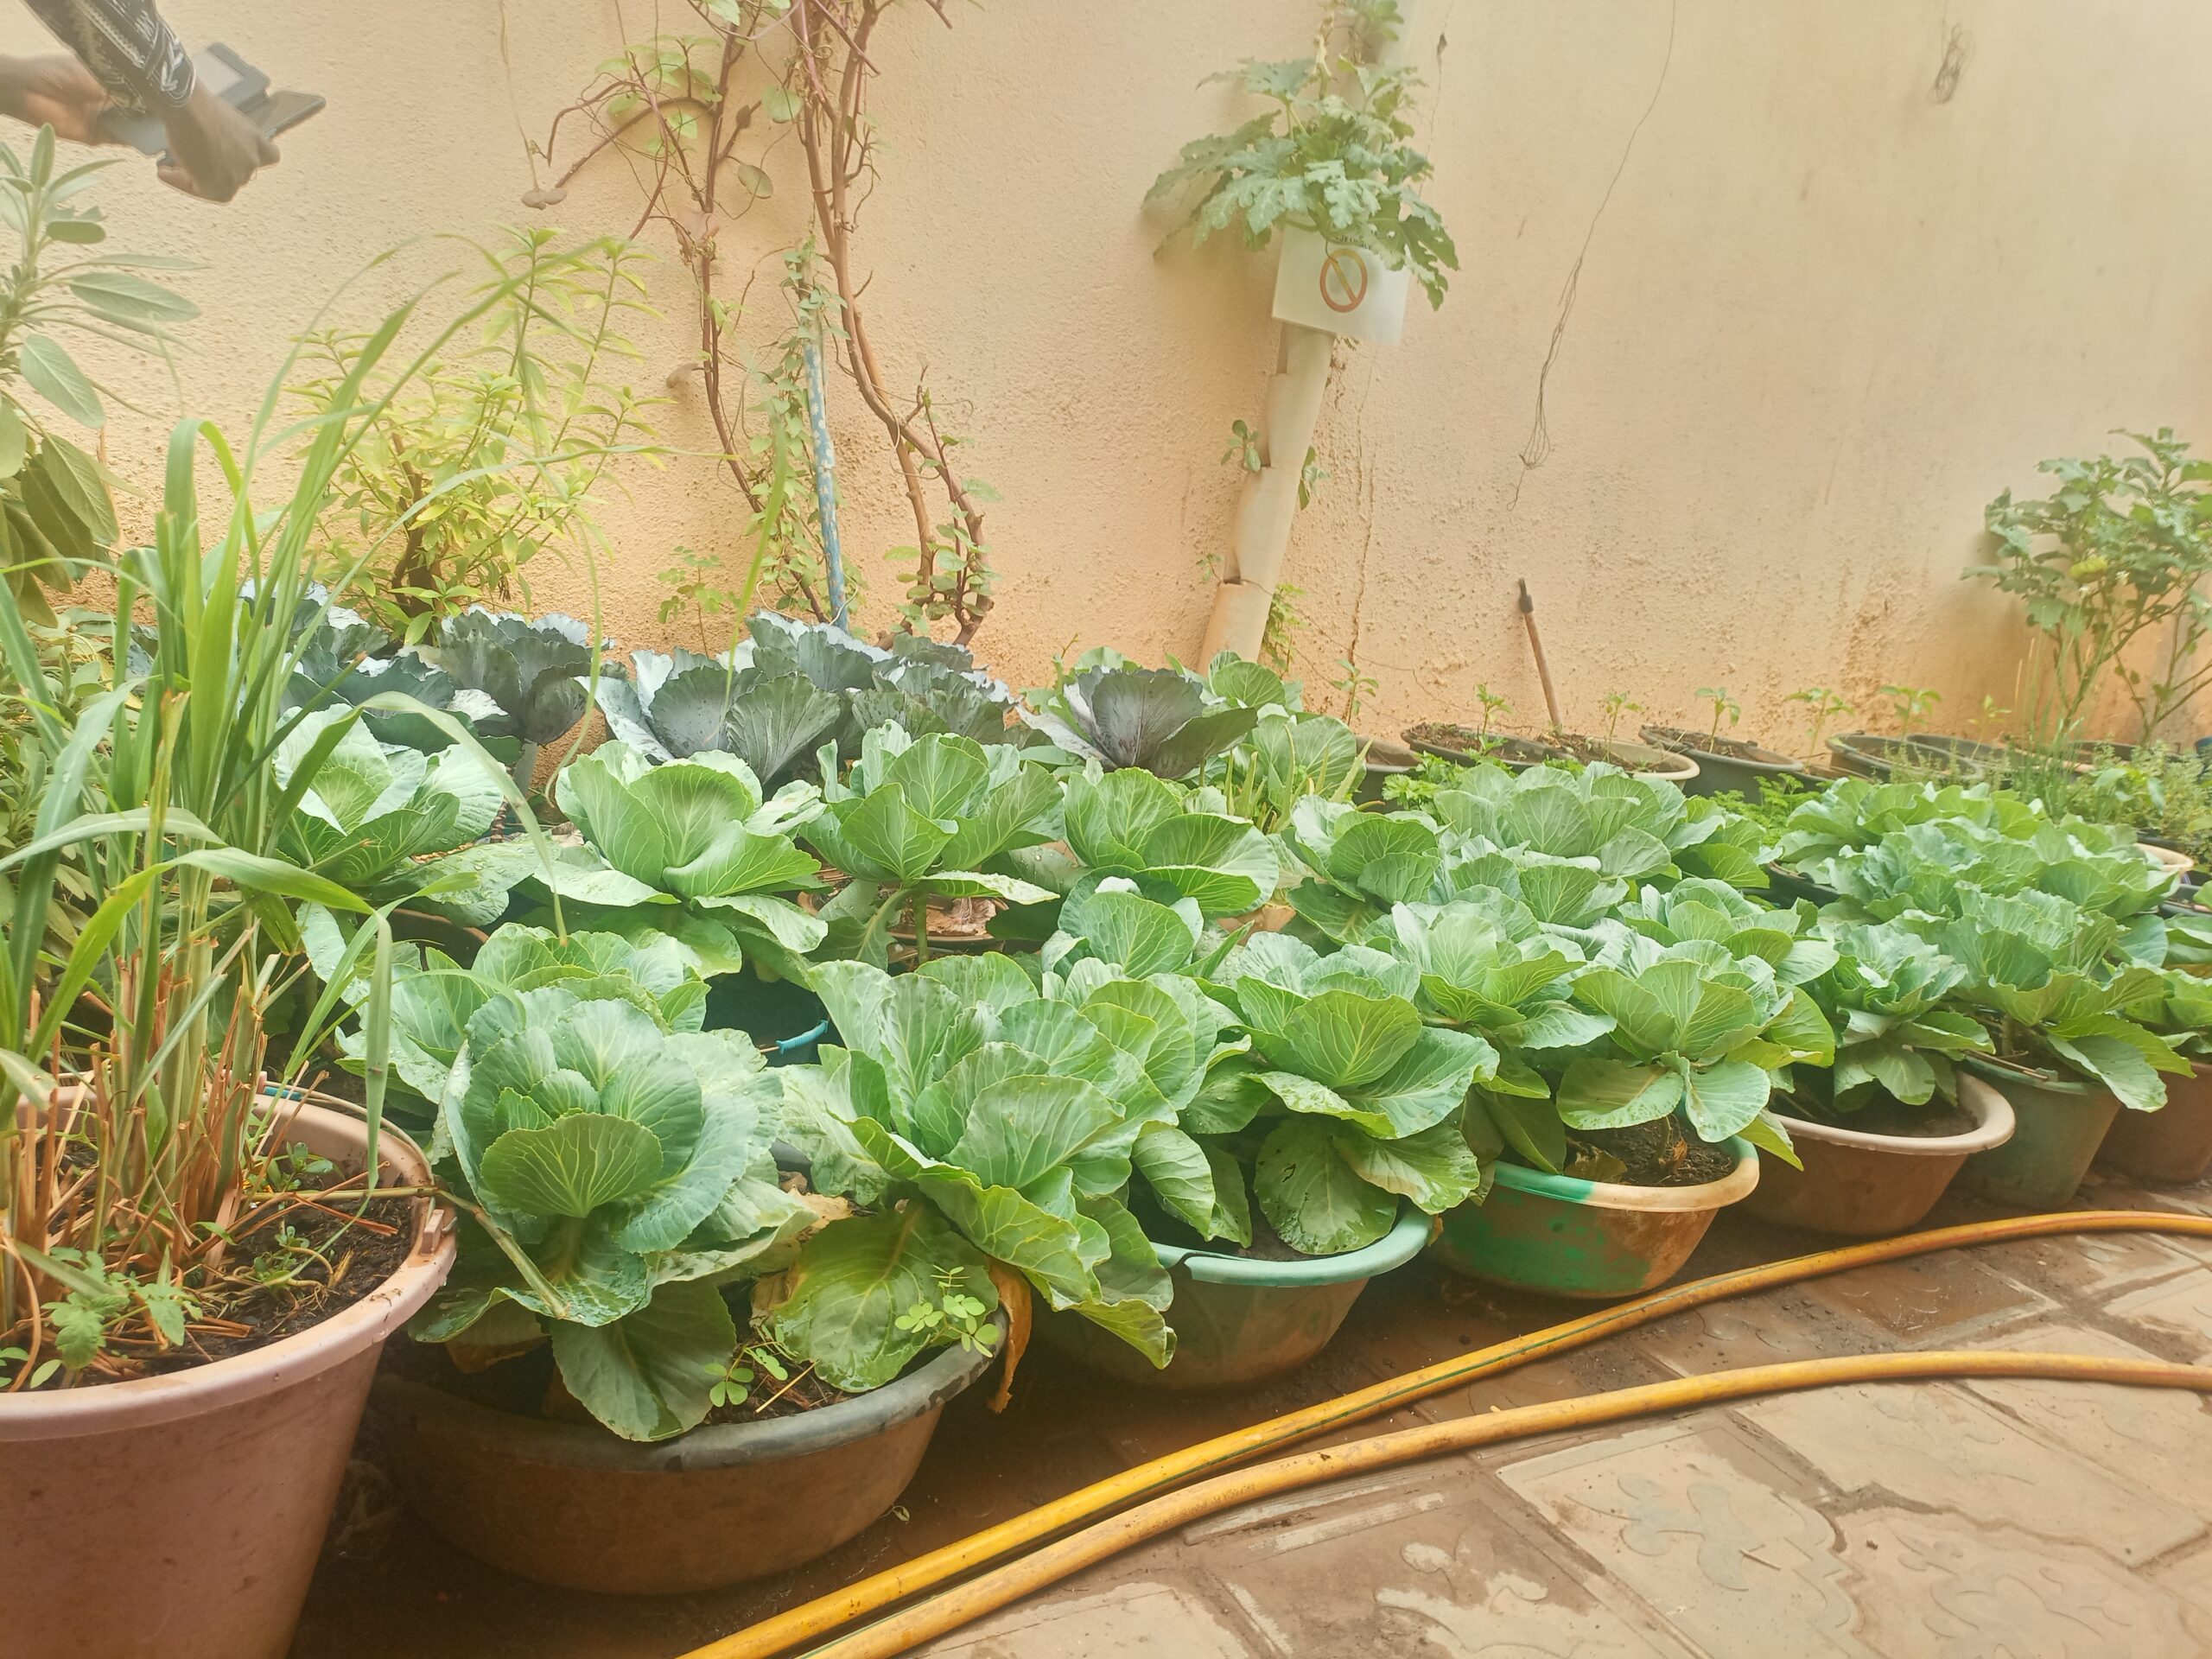 Burkina: Côté jardin-potager de ces citoyens à la main verte à Ouaga